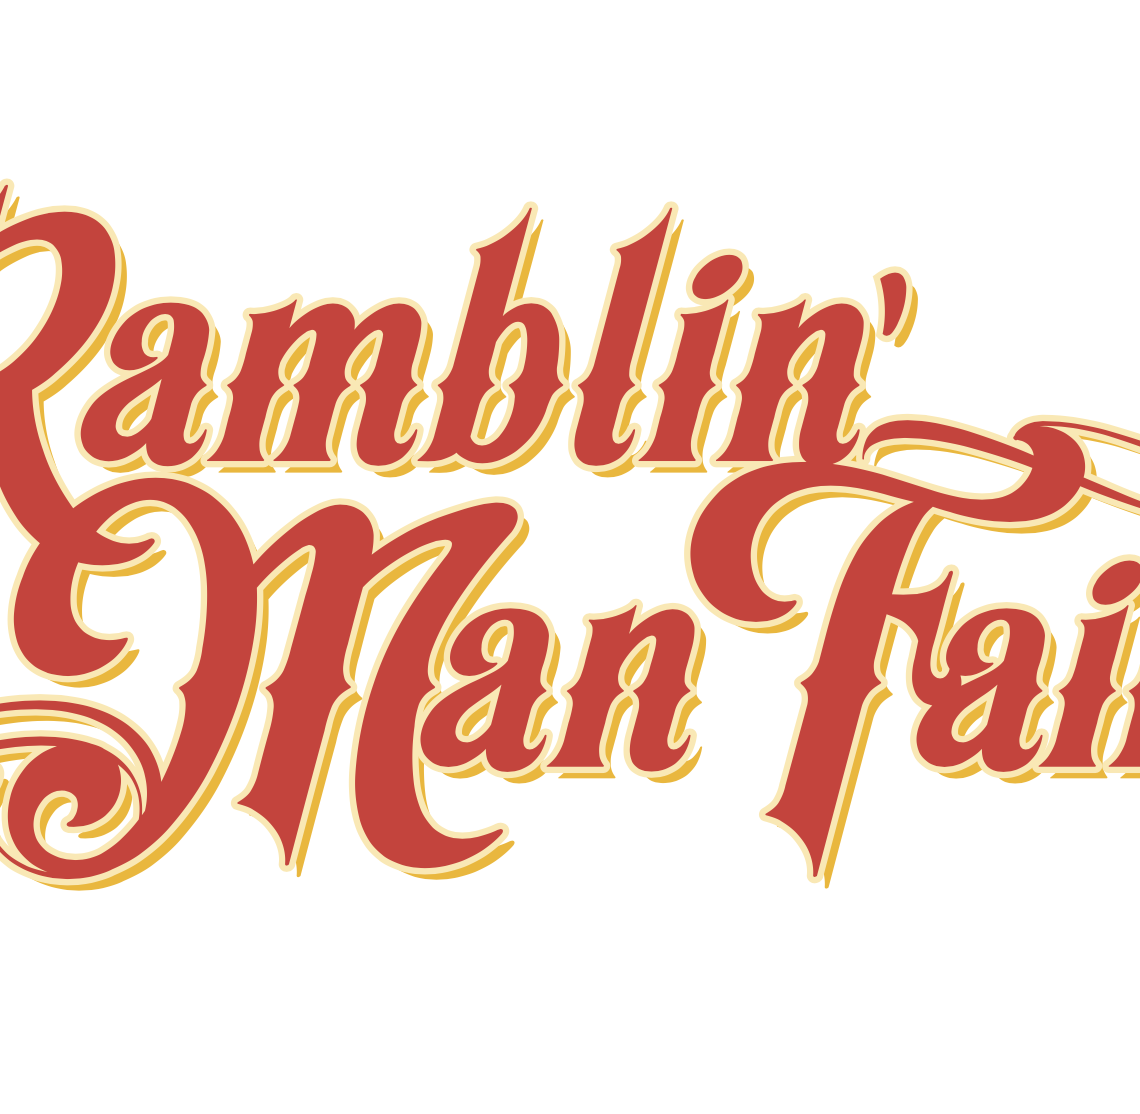 Ramblin Man Fair 2021 Announcement